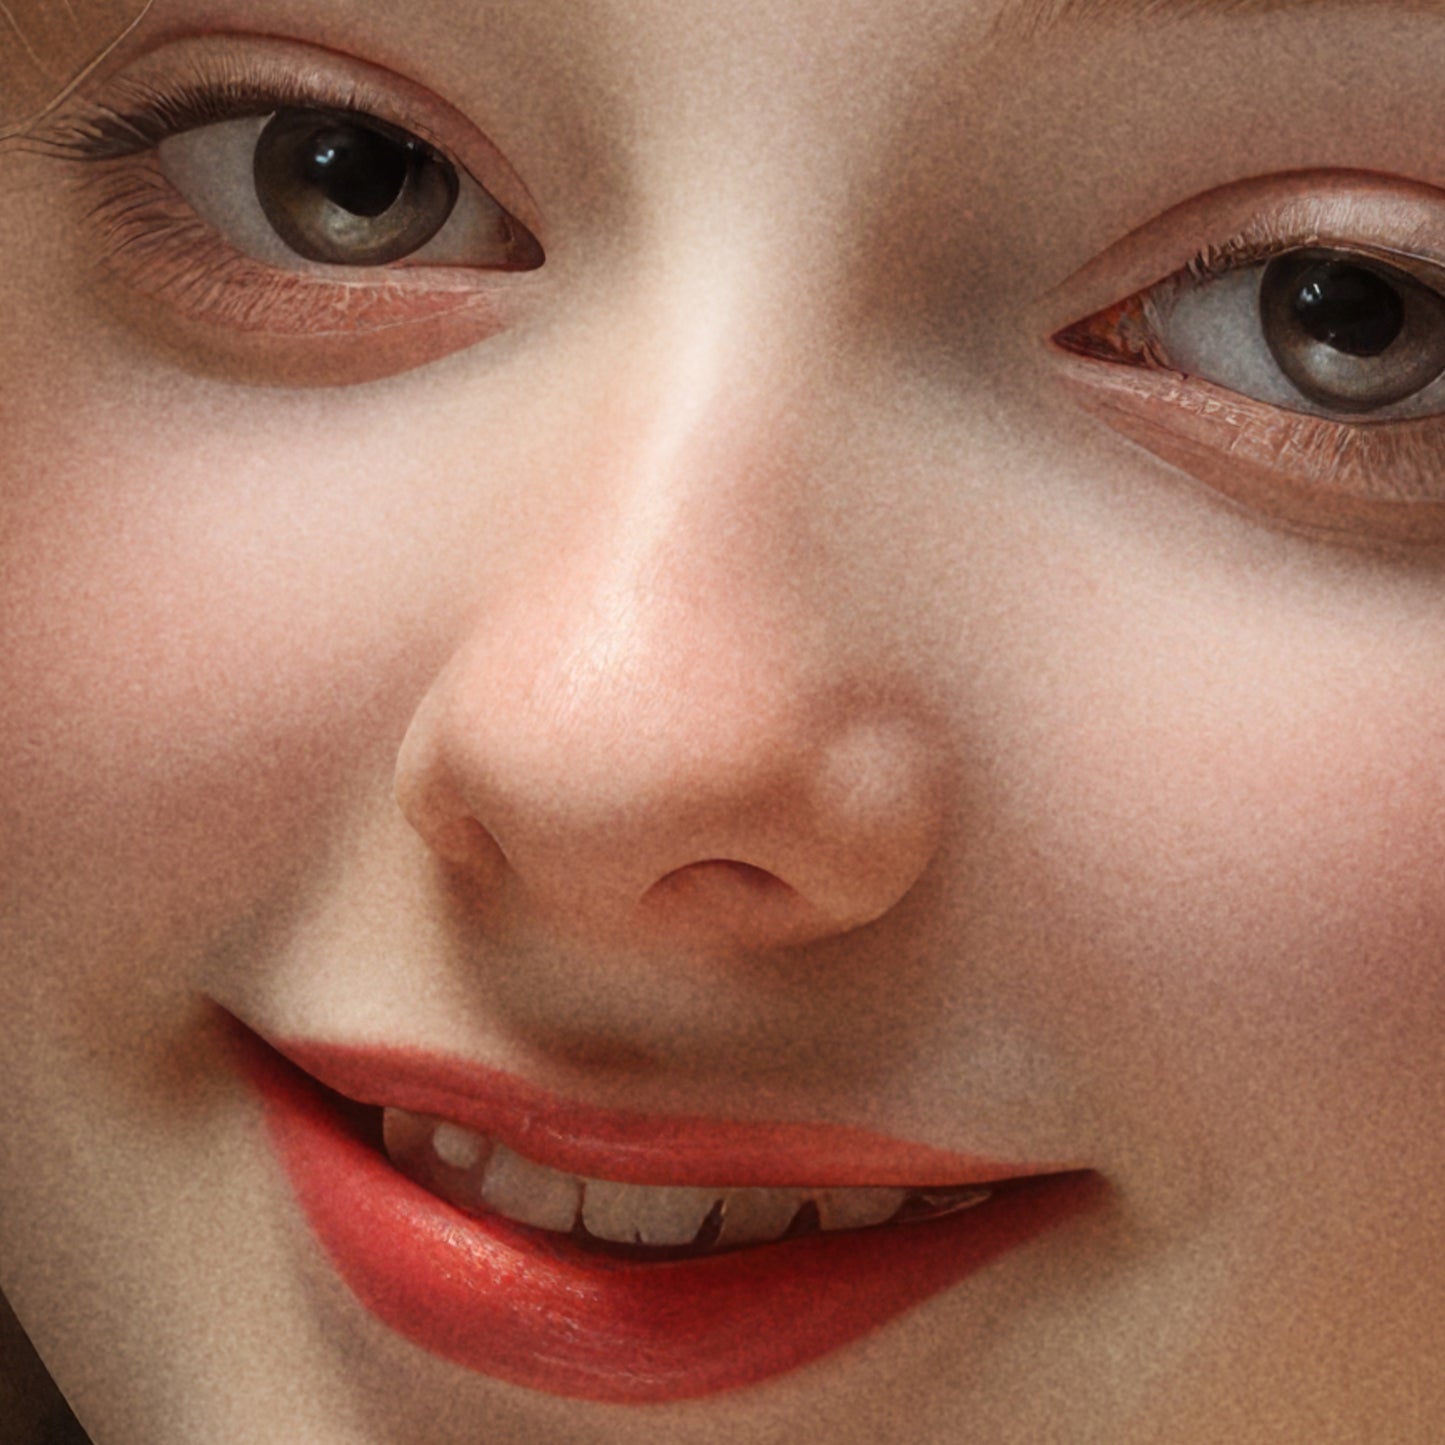 »Anne Rococo Girl Portrait 1«